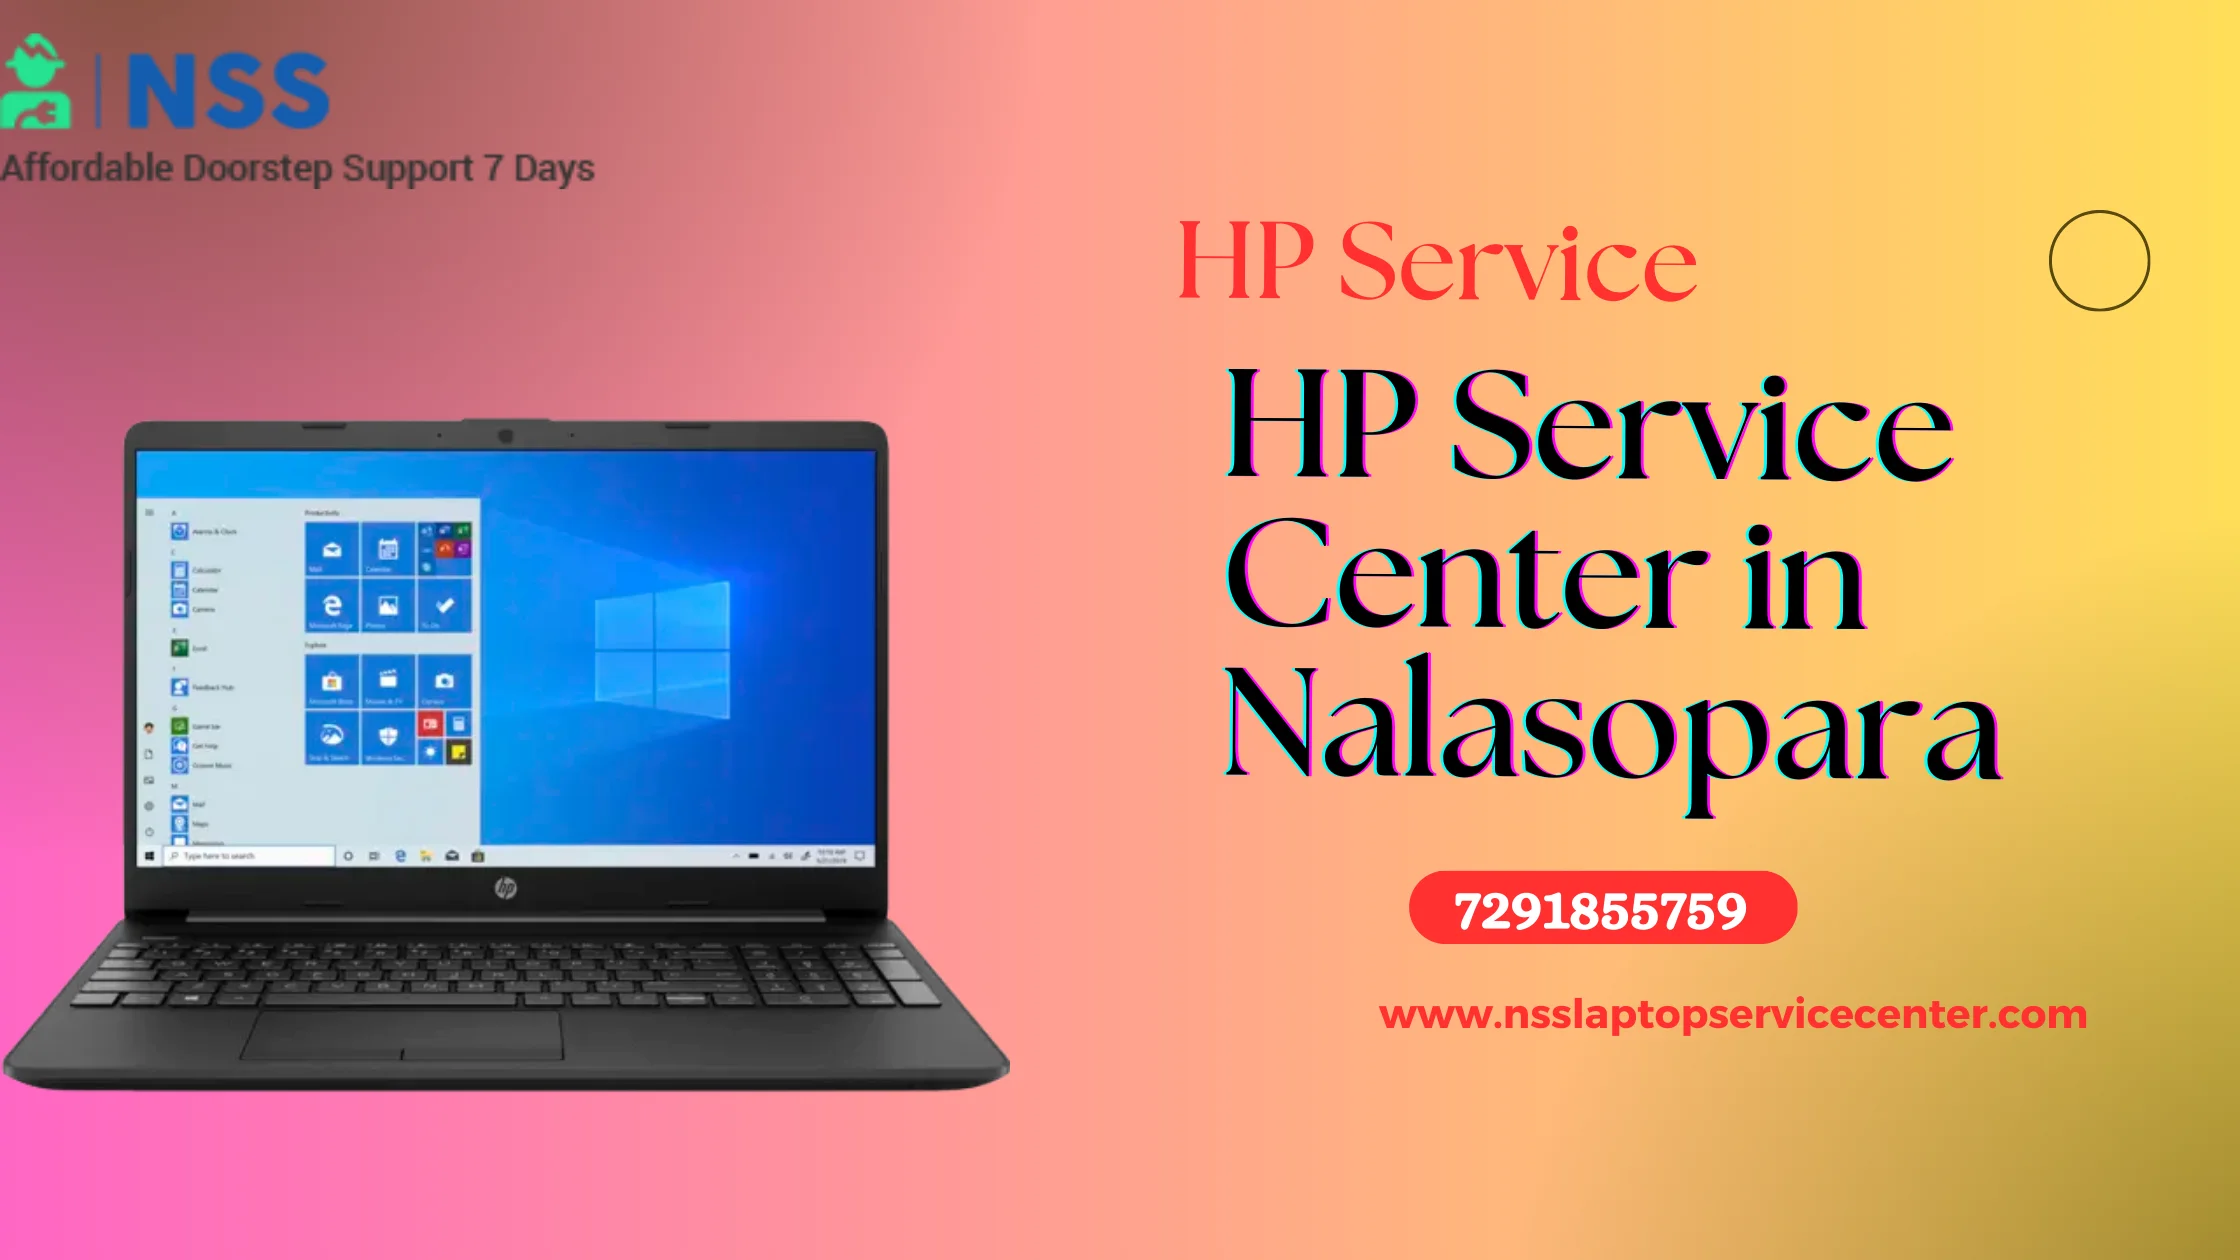 HP Service Center in Nalasopara Near Mumbai